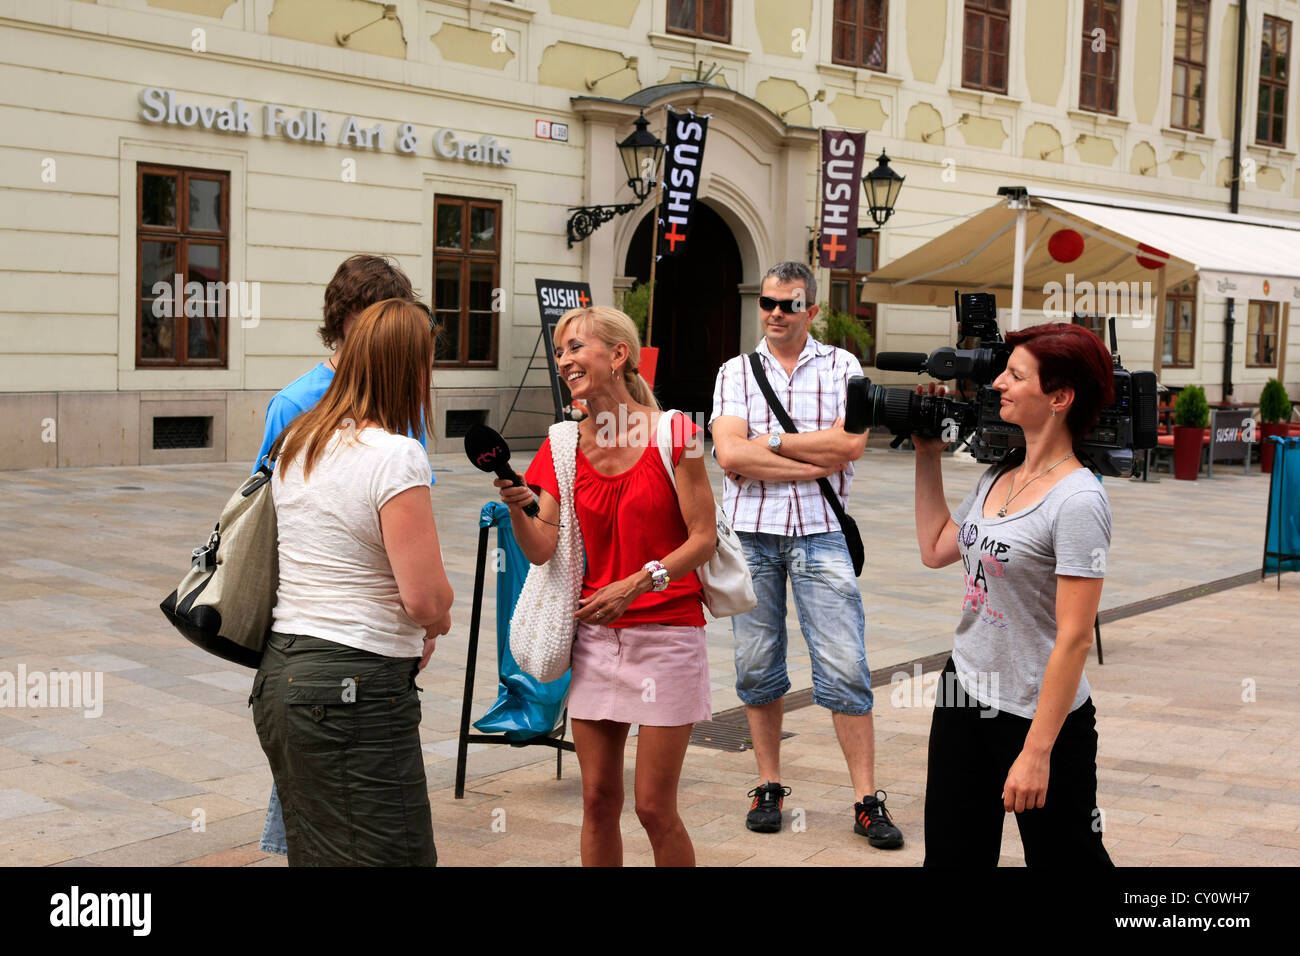 Weiblichen TV-Reporter und Film crew interviewen Passanten in Bratislava Altstadt während ein folk-Festival-Wochenende Stockfoto